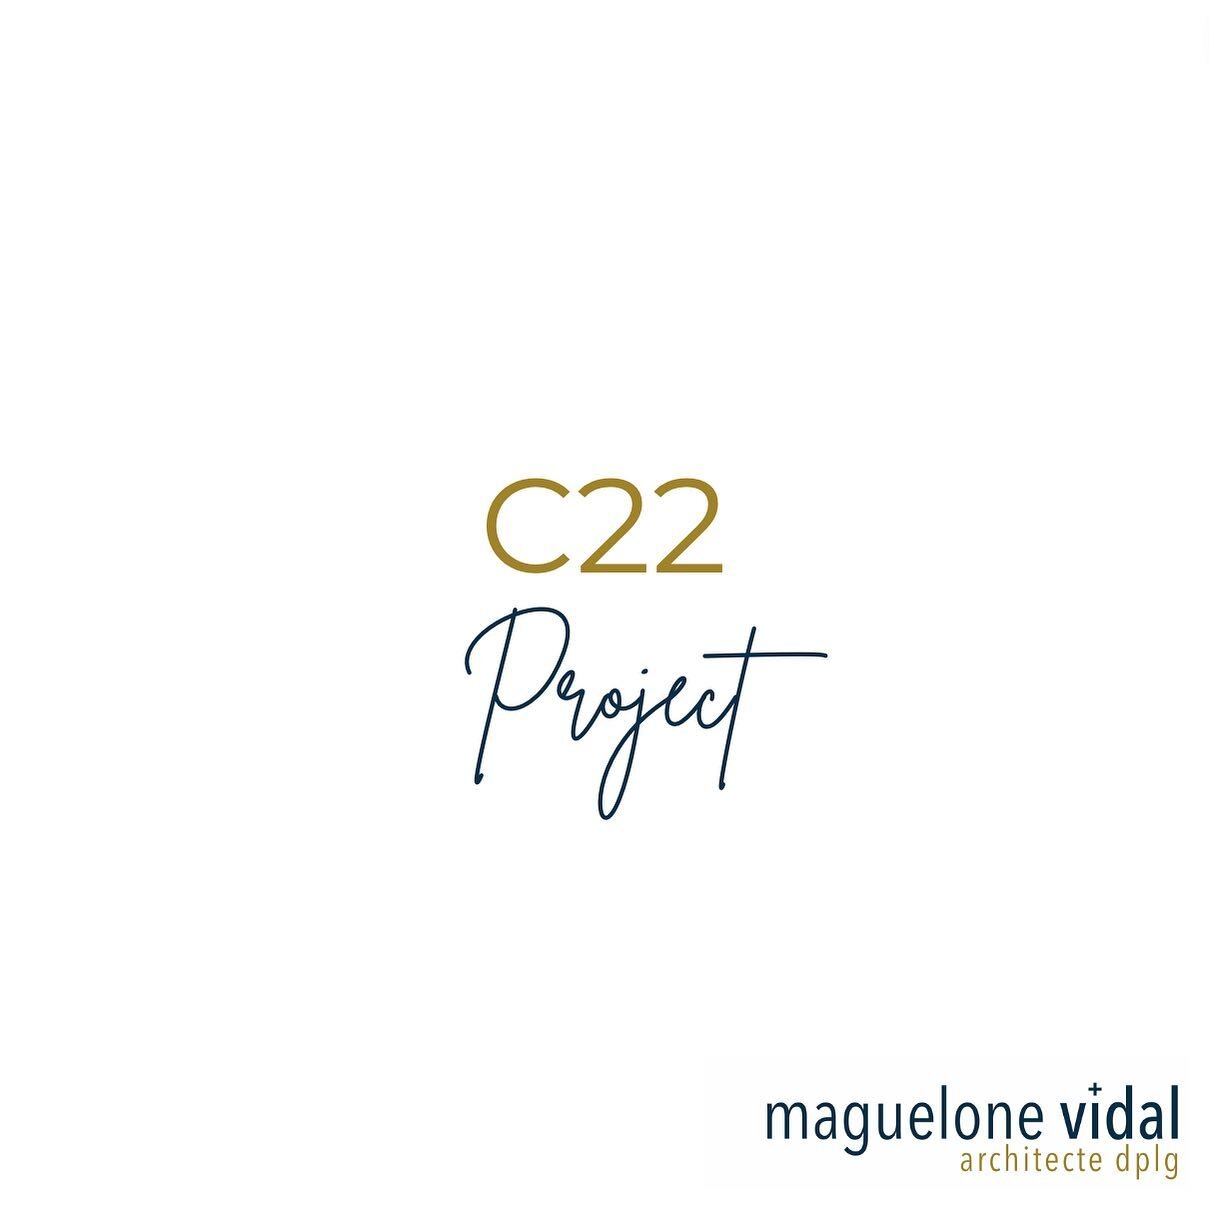 C22 Project

#project #renovation #architecture #montpellier #cabinetarchitecte #maisonfamiliale